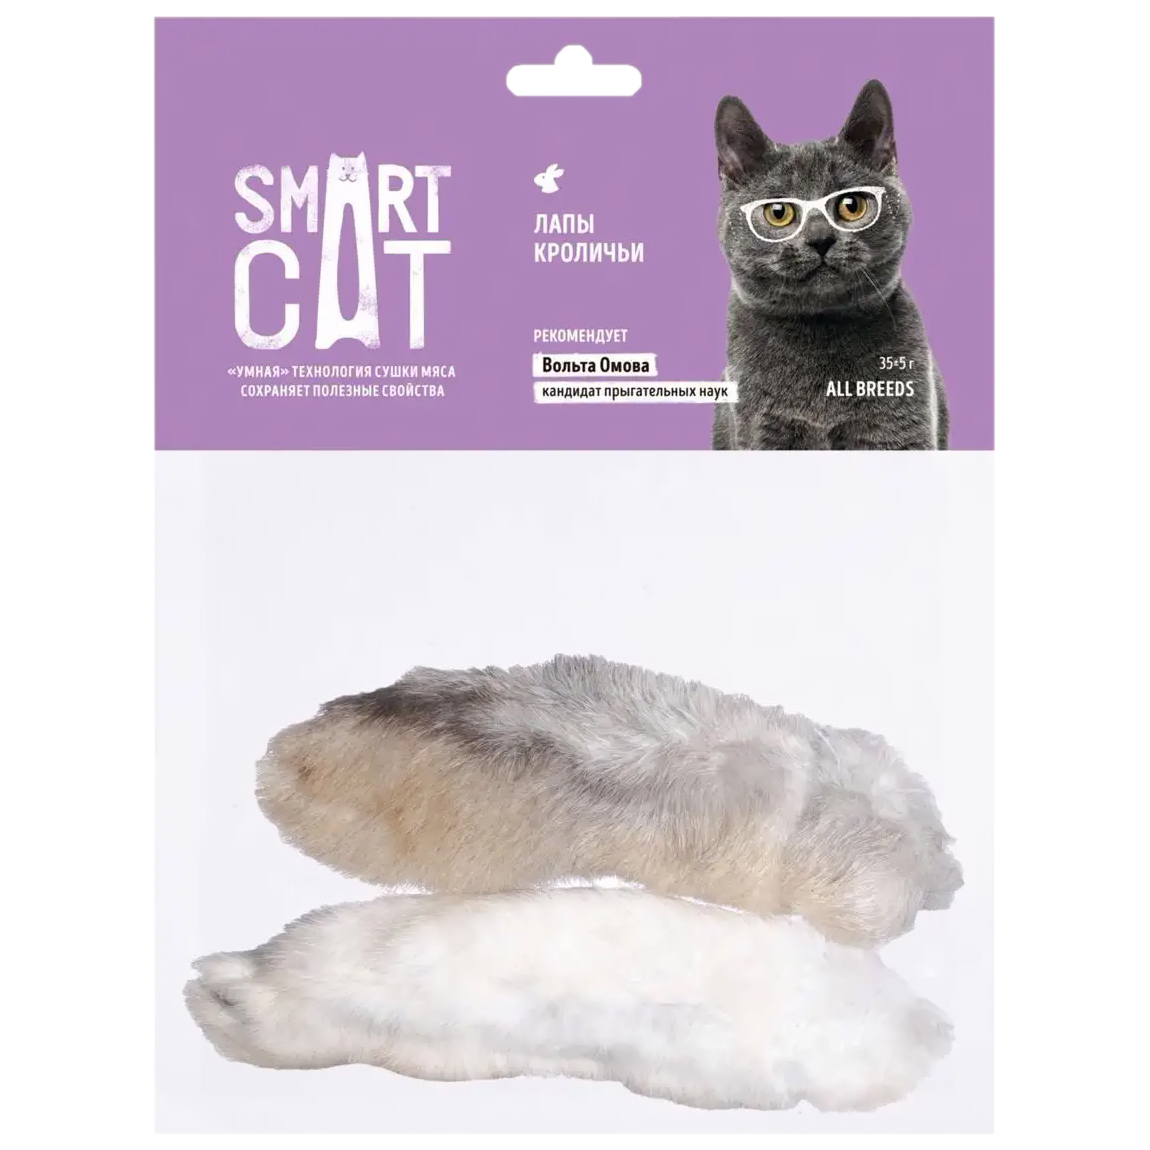 Лакомство для кошек Smart Cat лапы кроличьи, 35г